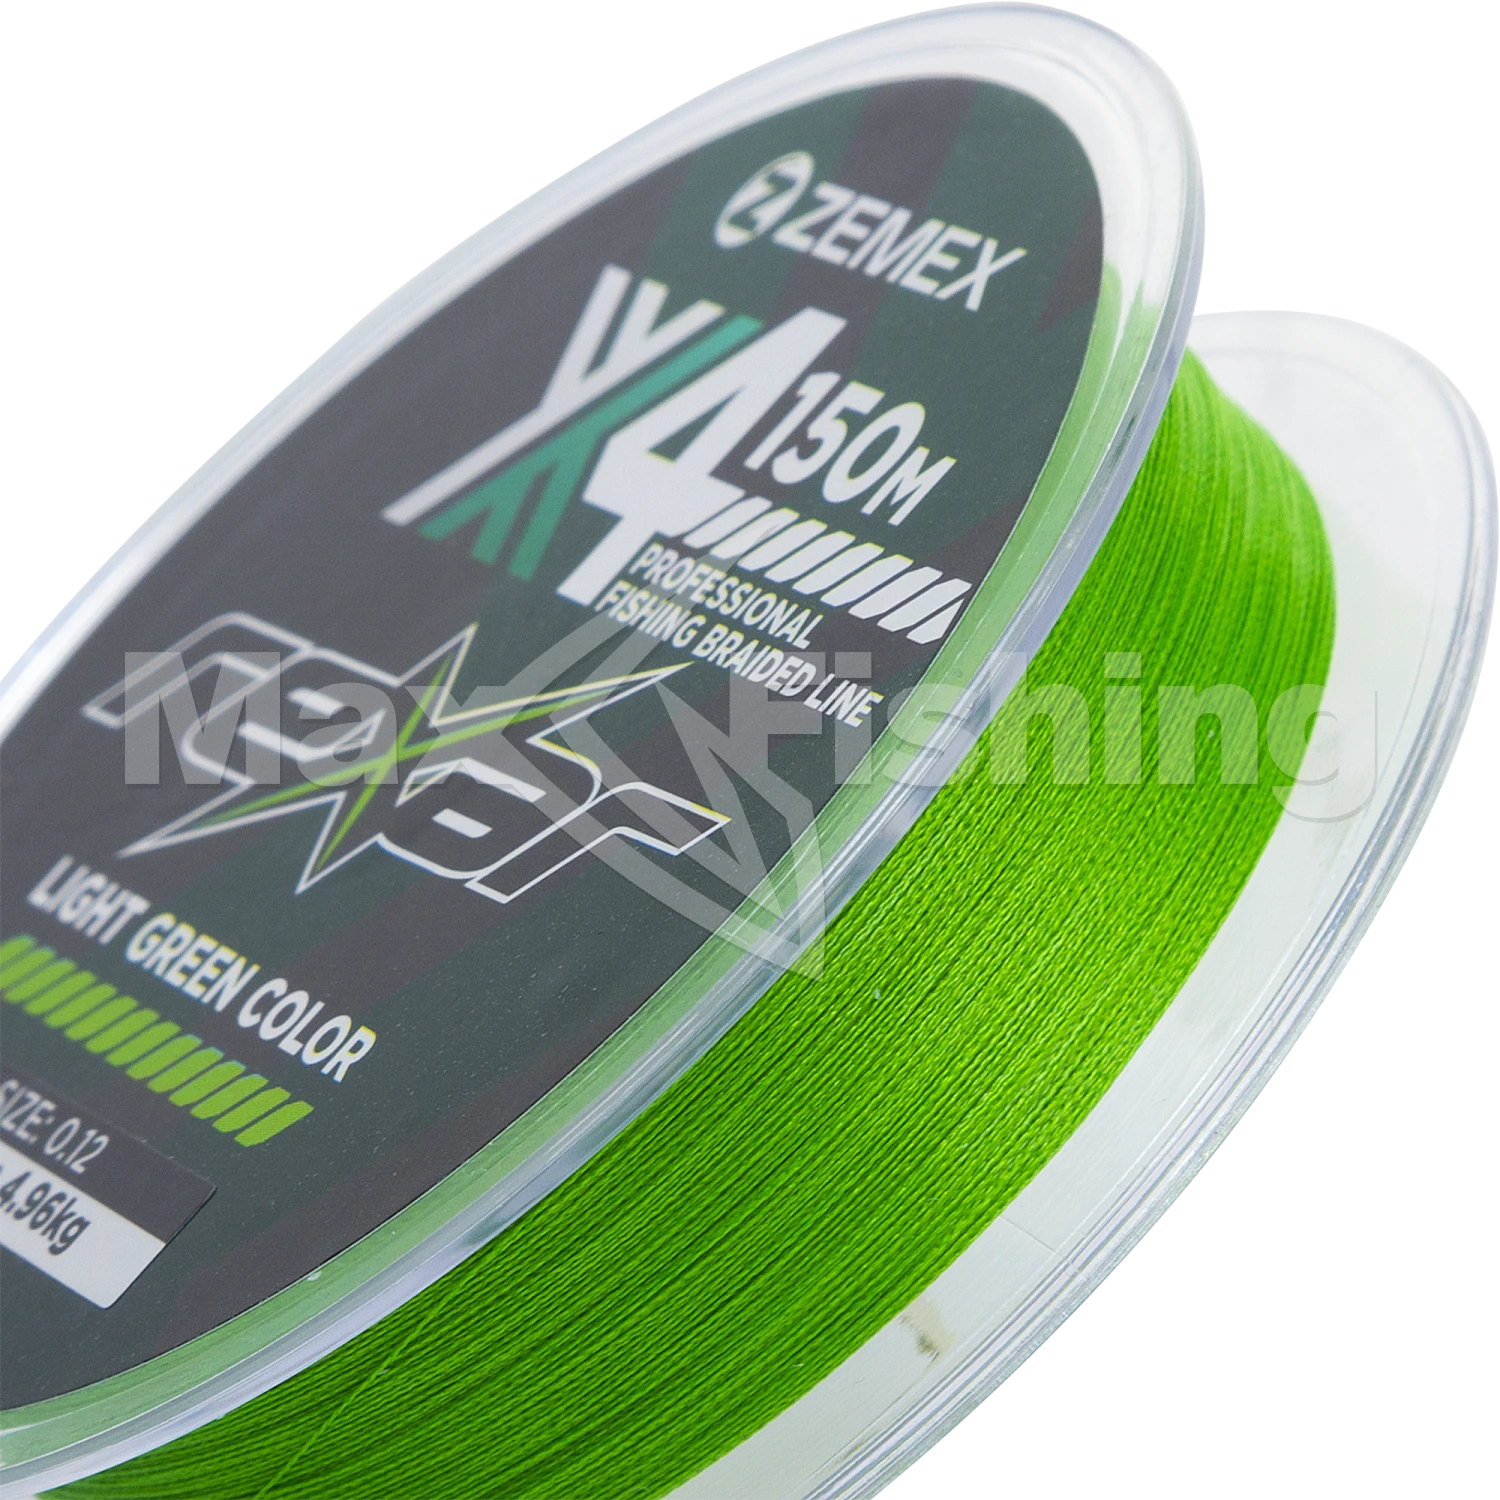 Шнур плетеный Zemex Rexar X4 0,12мм 150м (light green)